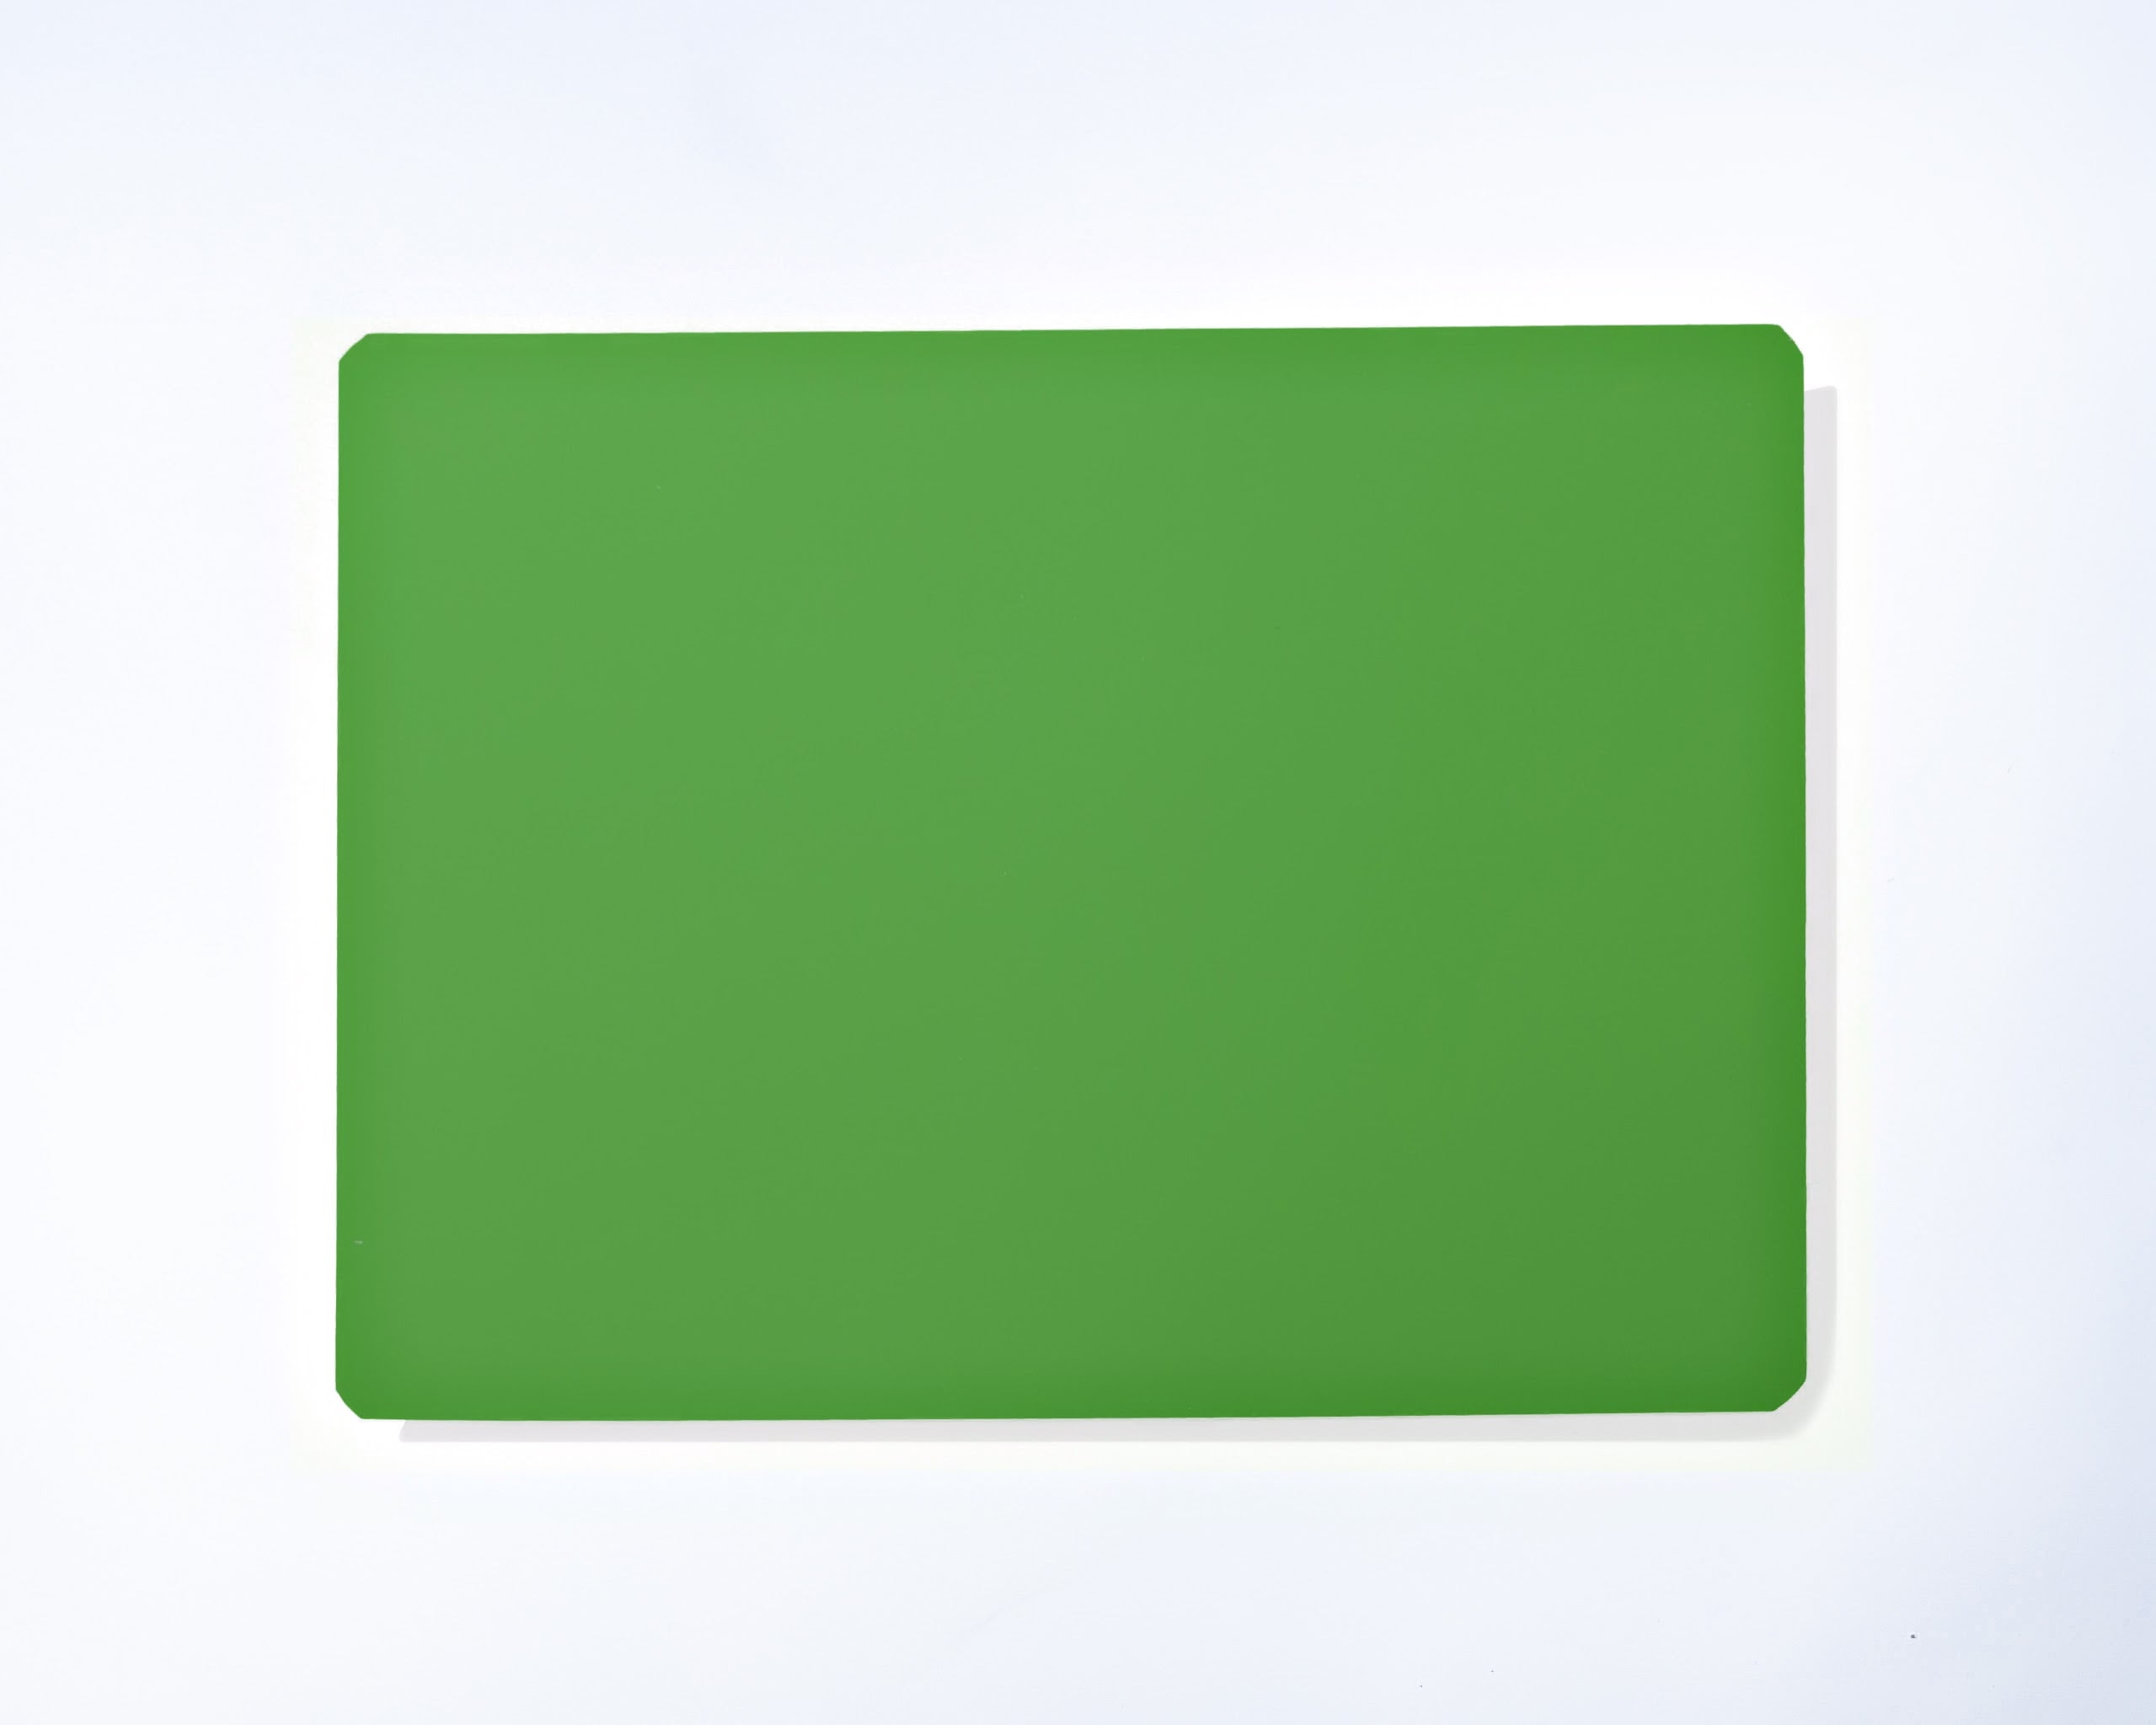 12 X 18-1 Sheet Kelly Green Dry Erase Magnetic Sheet 